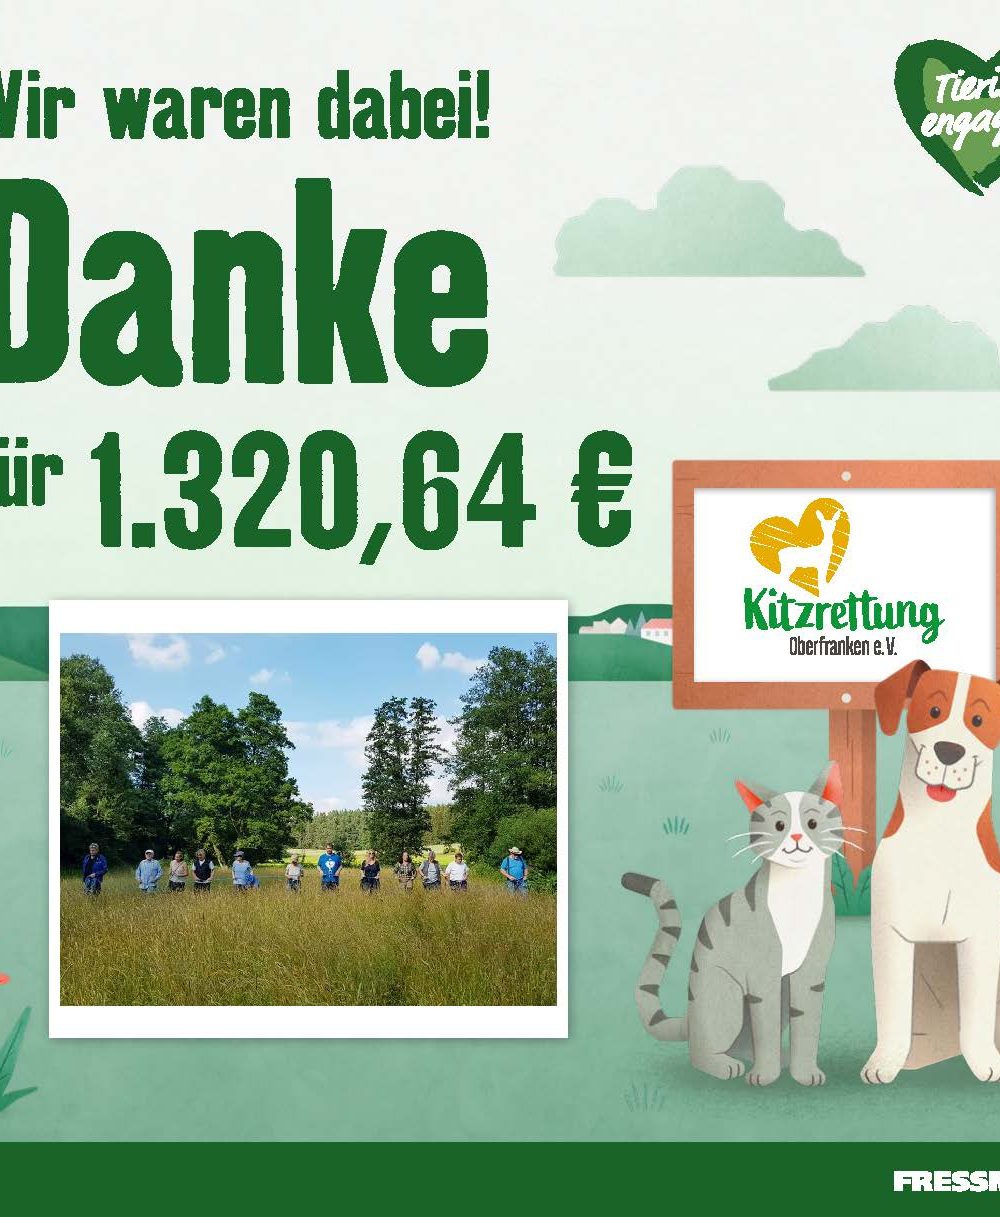 Kitzrettung Oberfranken wird von Fressnapf mit großer Geldspende aus Aktion „Freundschaft verbindet!“ unterstützt